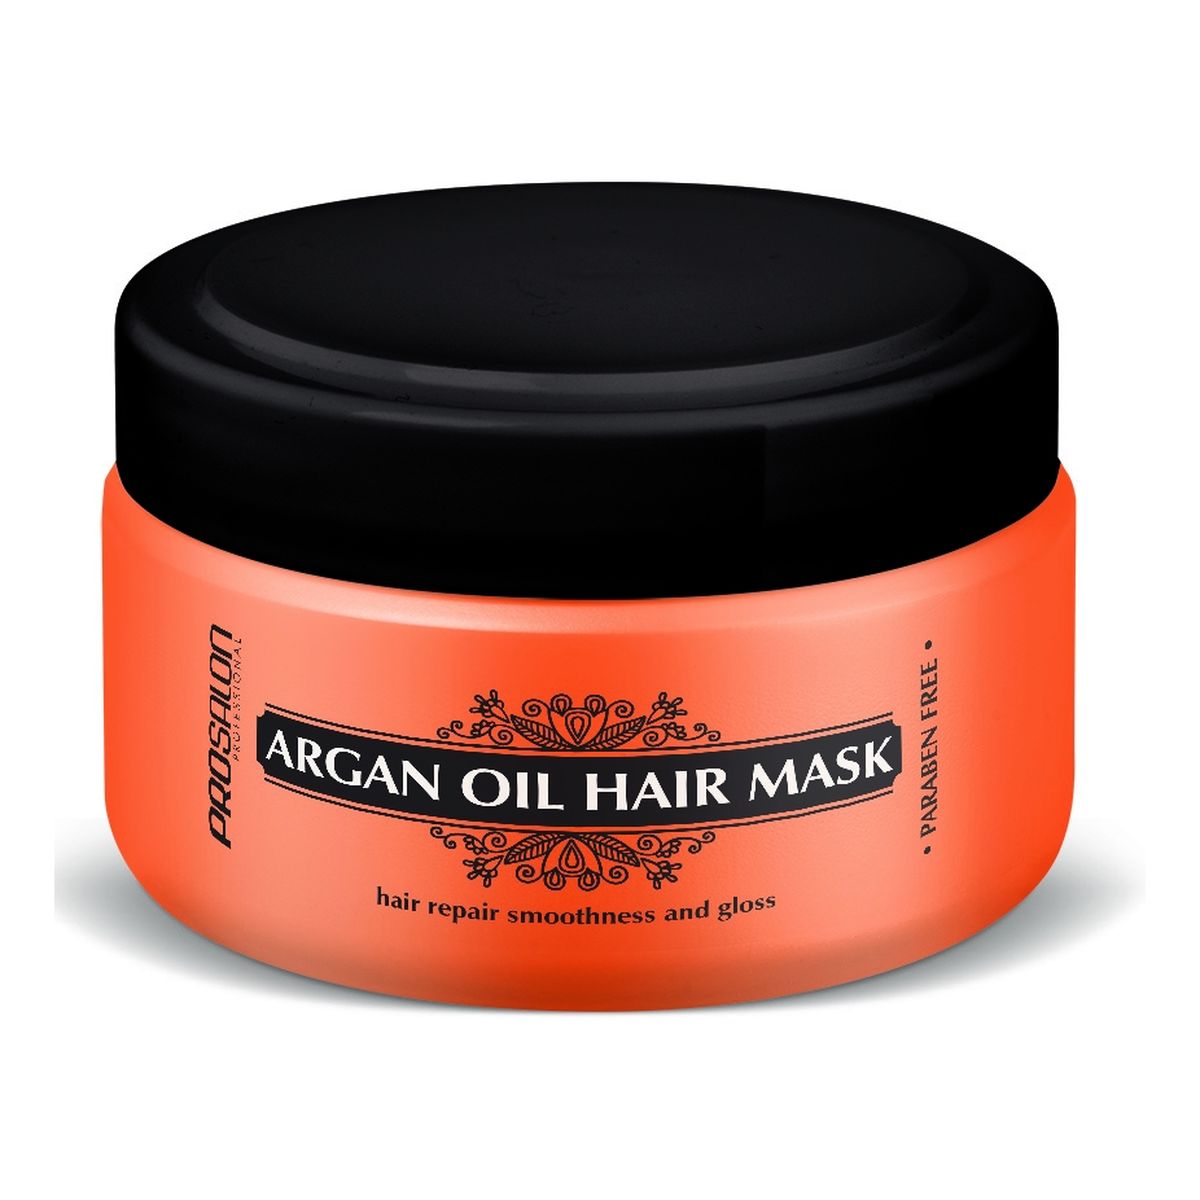 Chantal Profesional Prosalon argan oil, Maska do włosów z olejkiem arganowym 200g